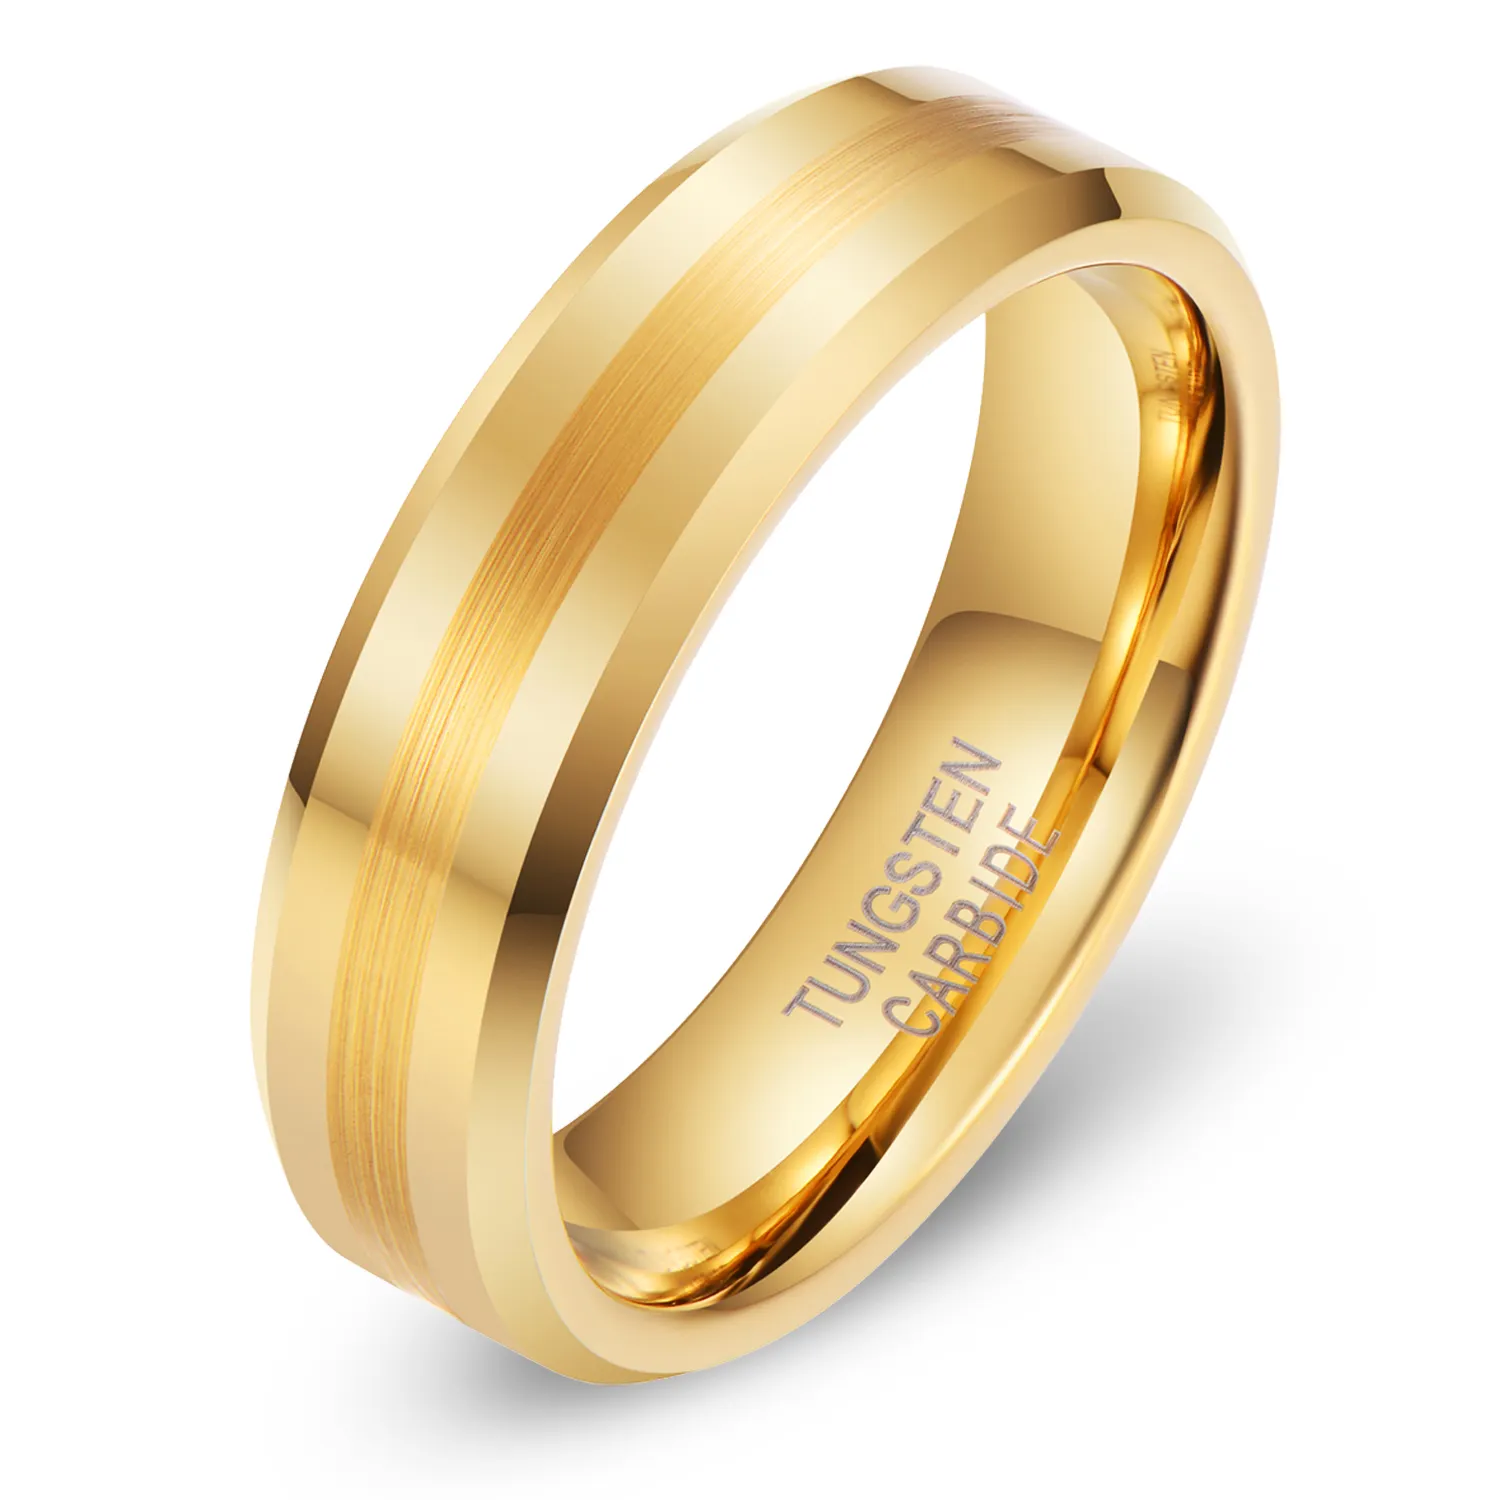 L'ultimo anello all'ingrosso progetta l'anello di tungsteno dell'oro dell'anello della coppia di nozze di 6mm 8mm per l'uomo